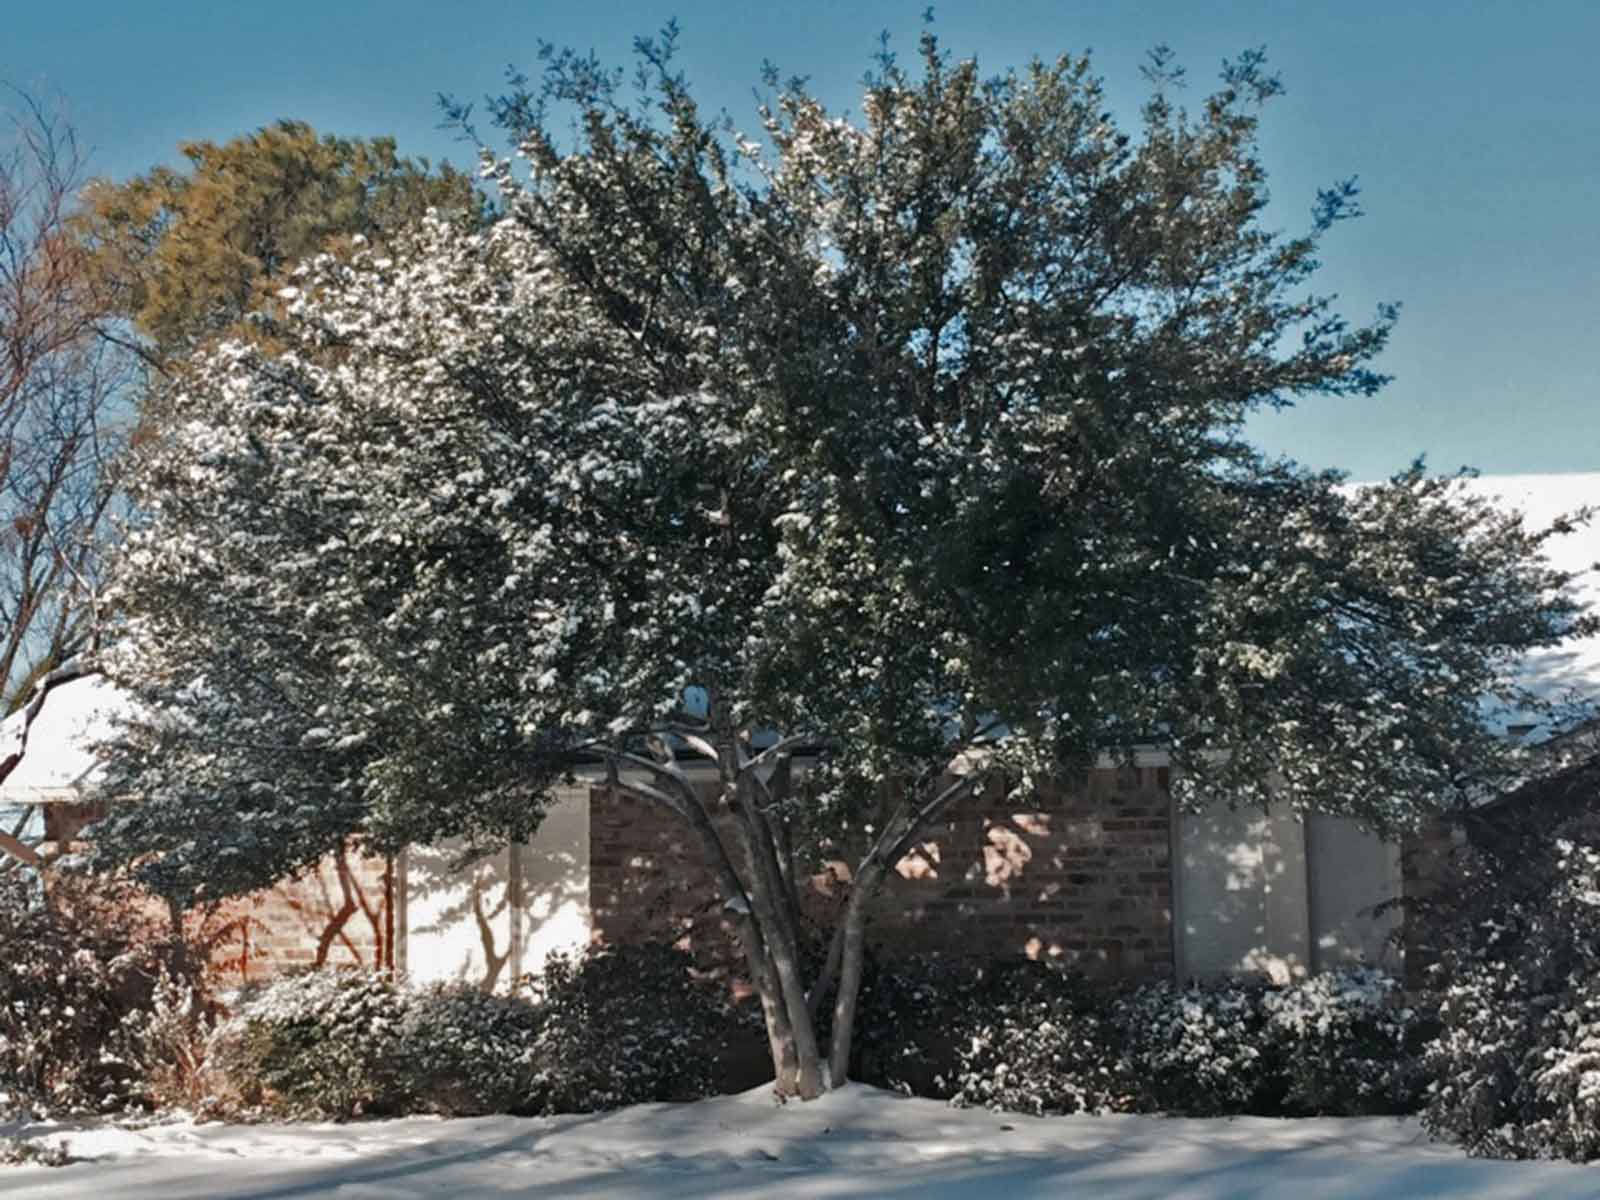 yaupon-holly-tree-winter-snow